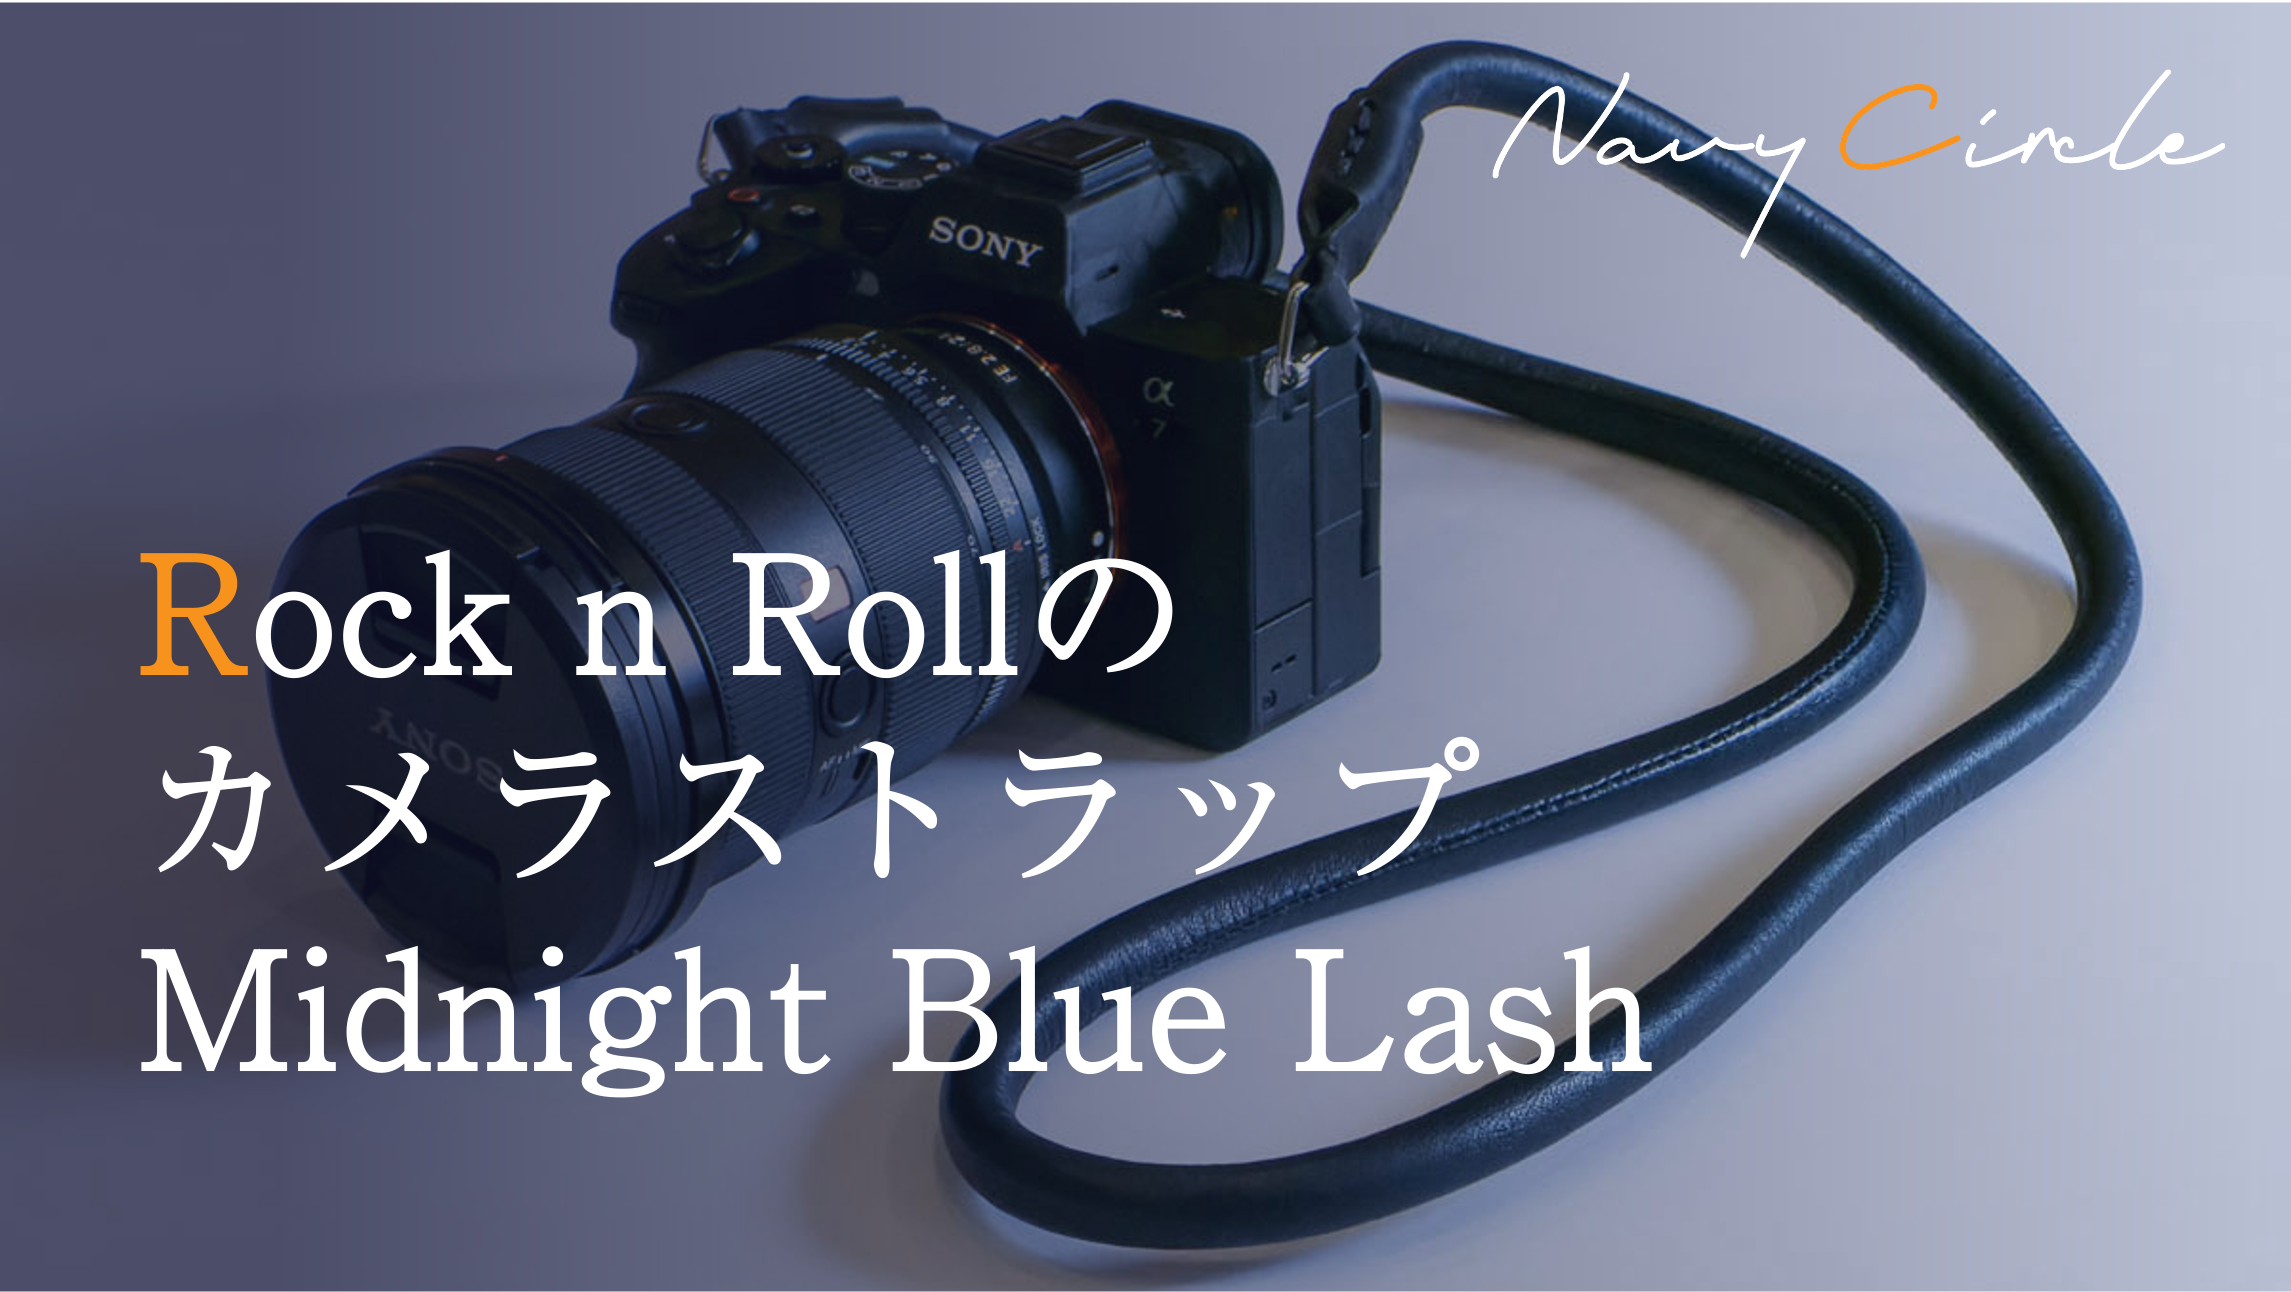 Rock n Rollのカメラストラップ「Midnight Blue Lash」| "Midnight Blue Lash" camera strap by Rock n Roll